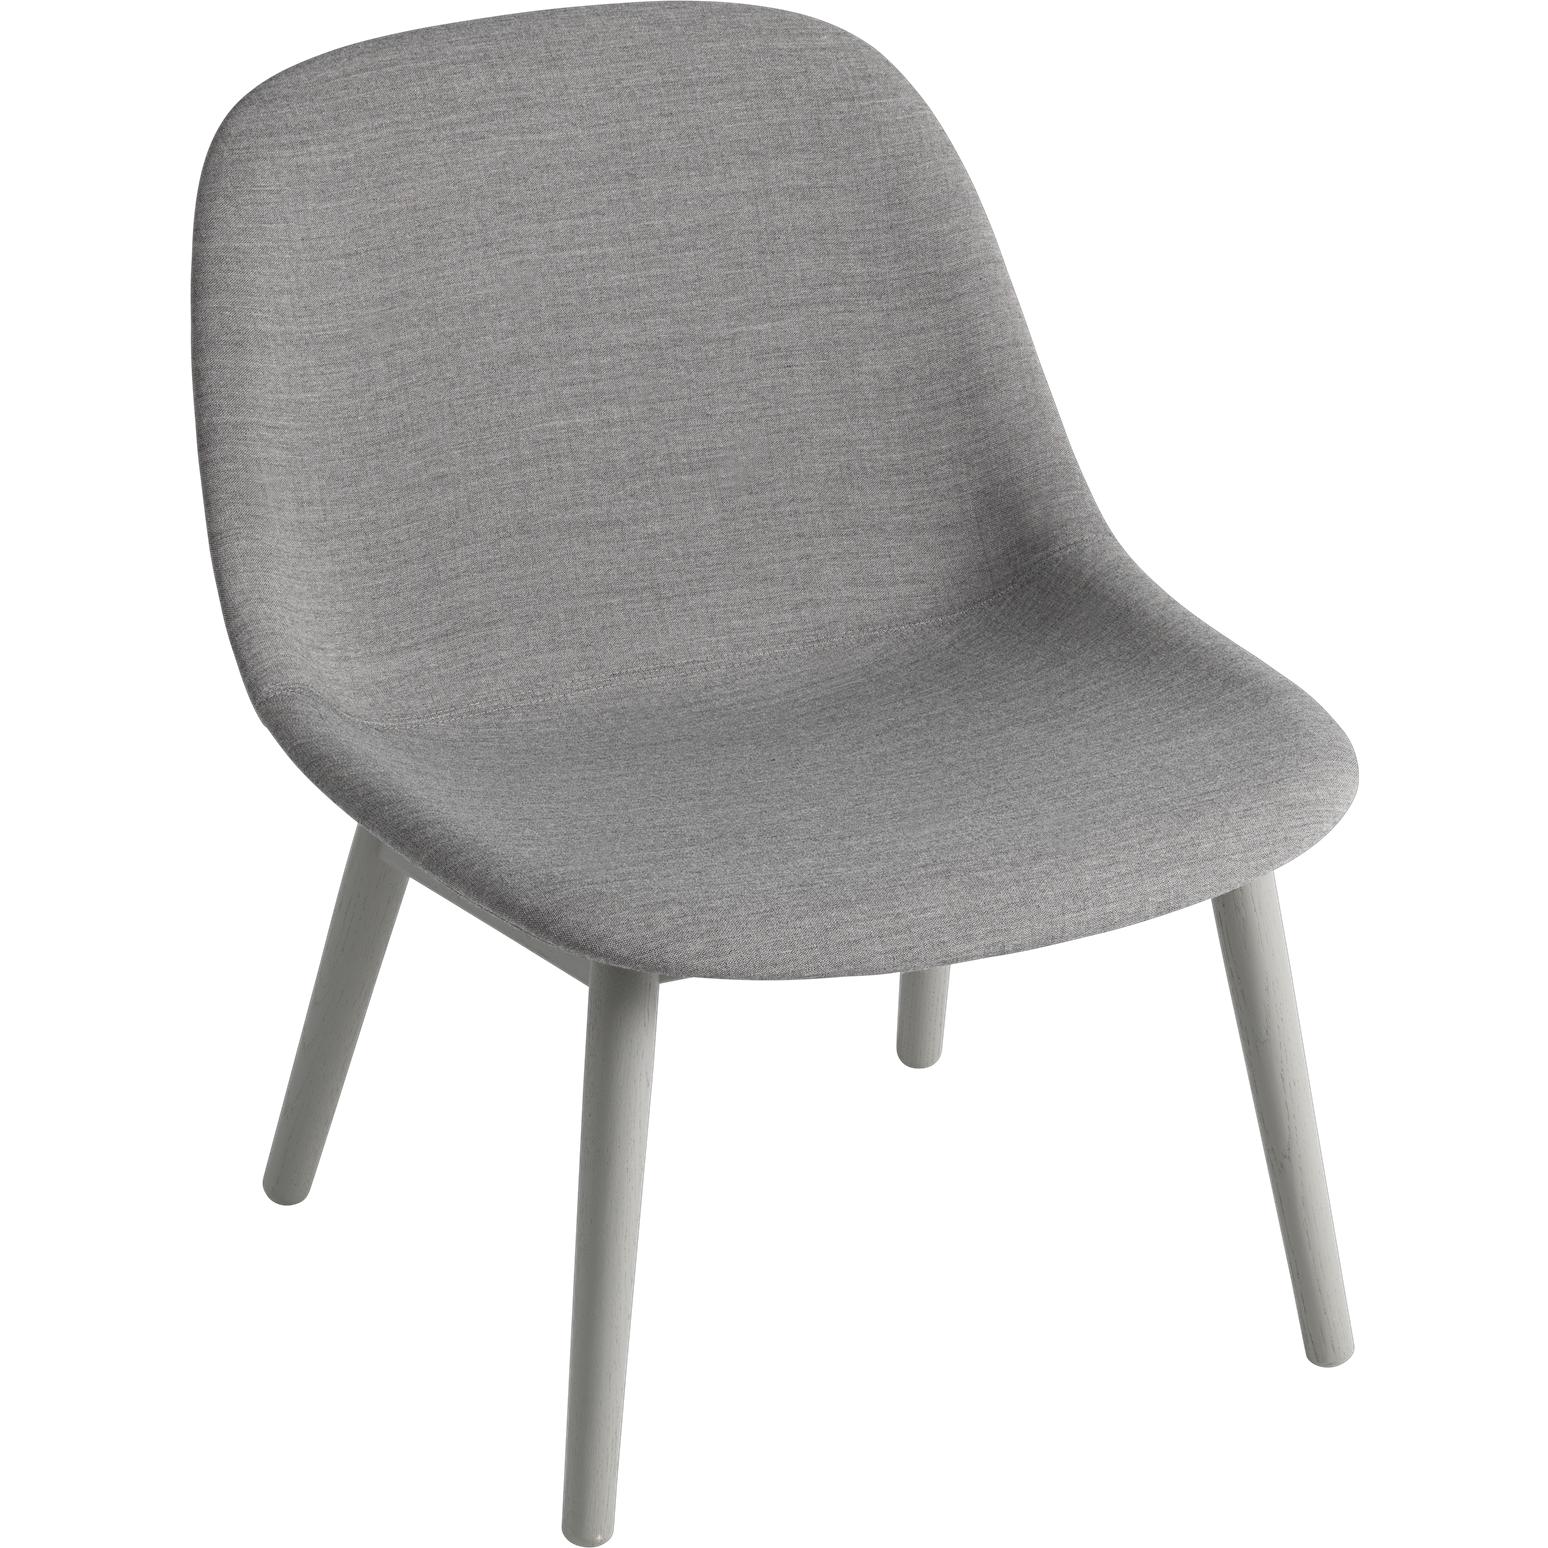 Chaise salon de fibre muuto jambes en bois, siège en tissu, gris / remix 133